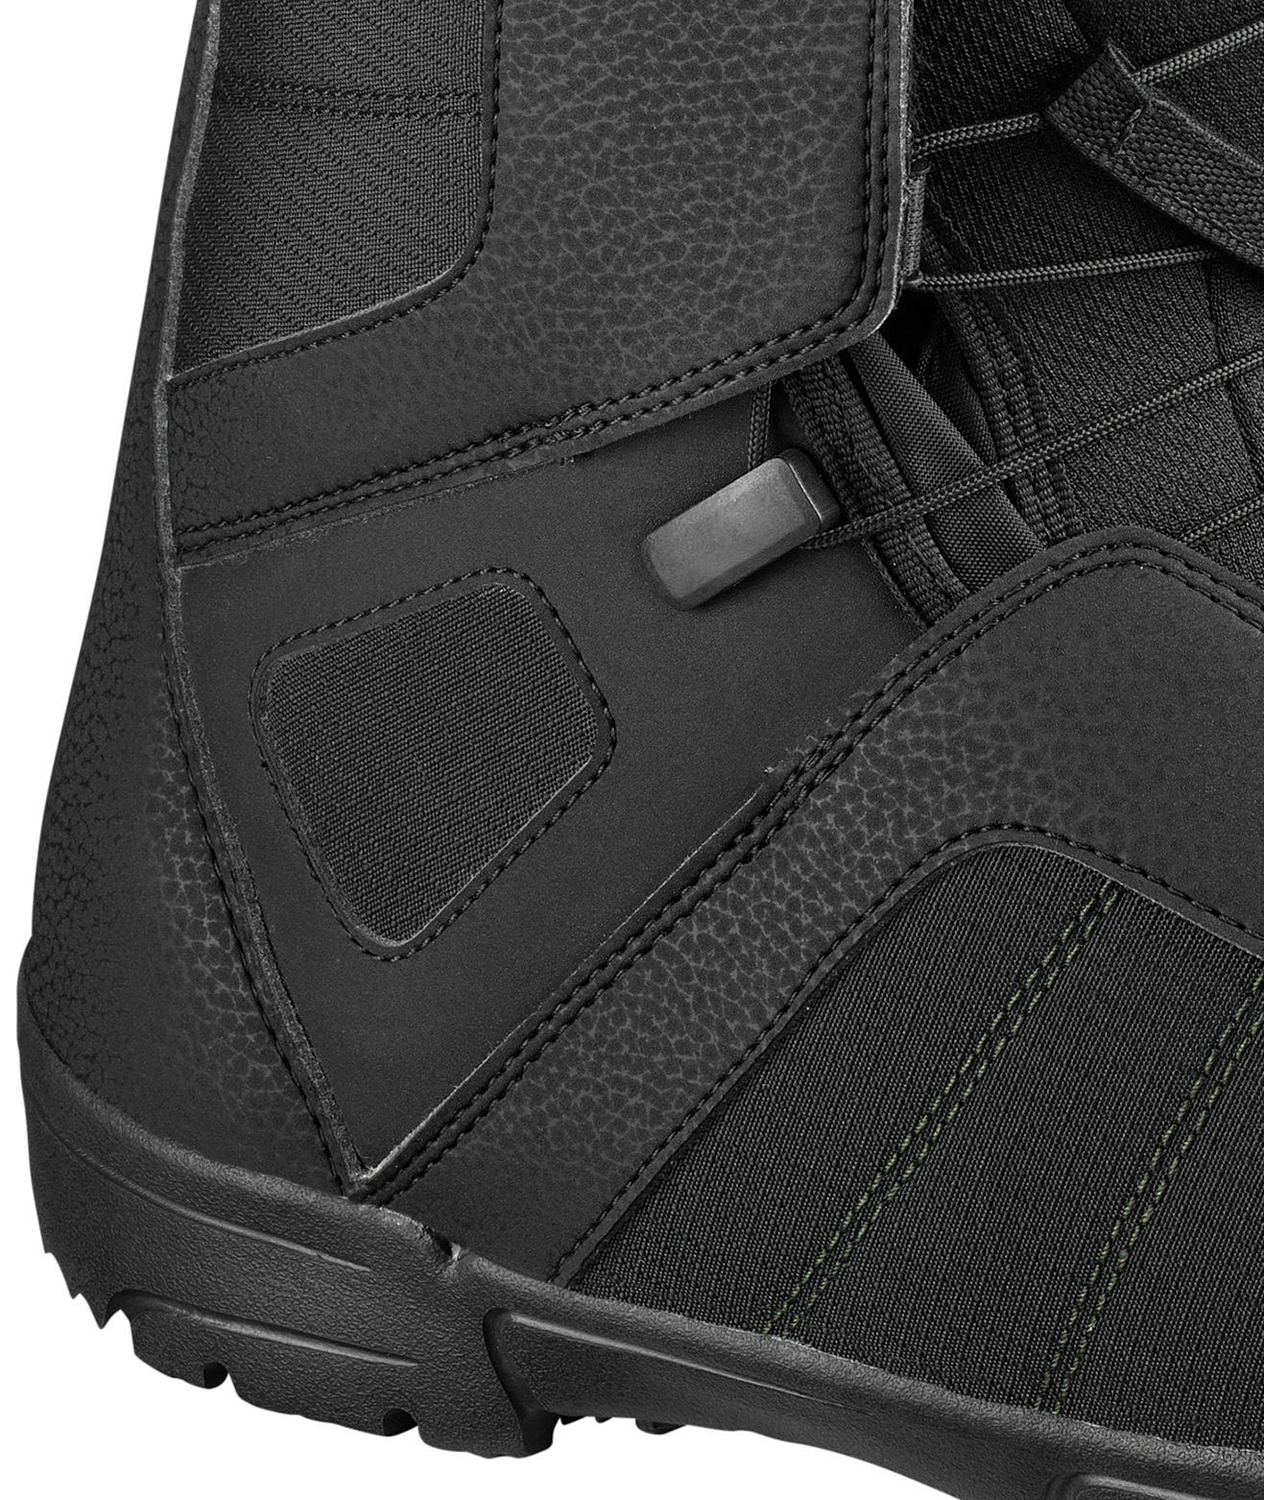 Ботинки для сноуборда SALOMON 2020-21 Titan Black/Black/Green